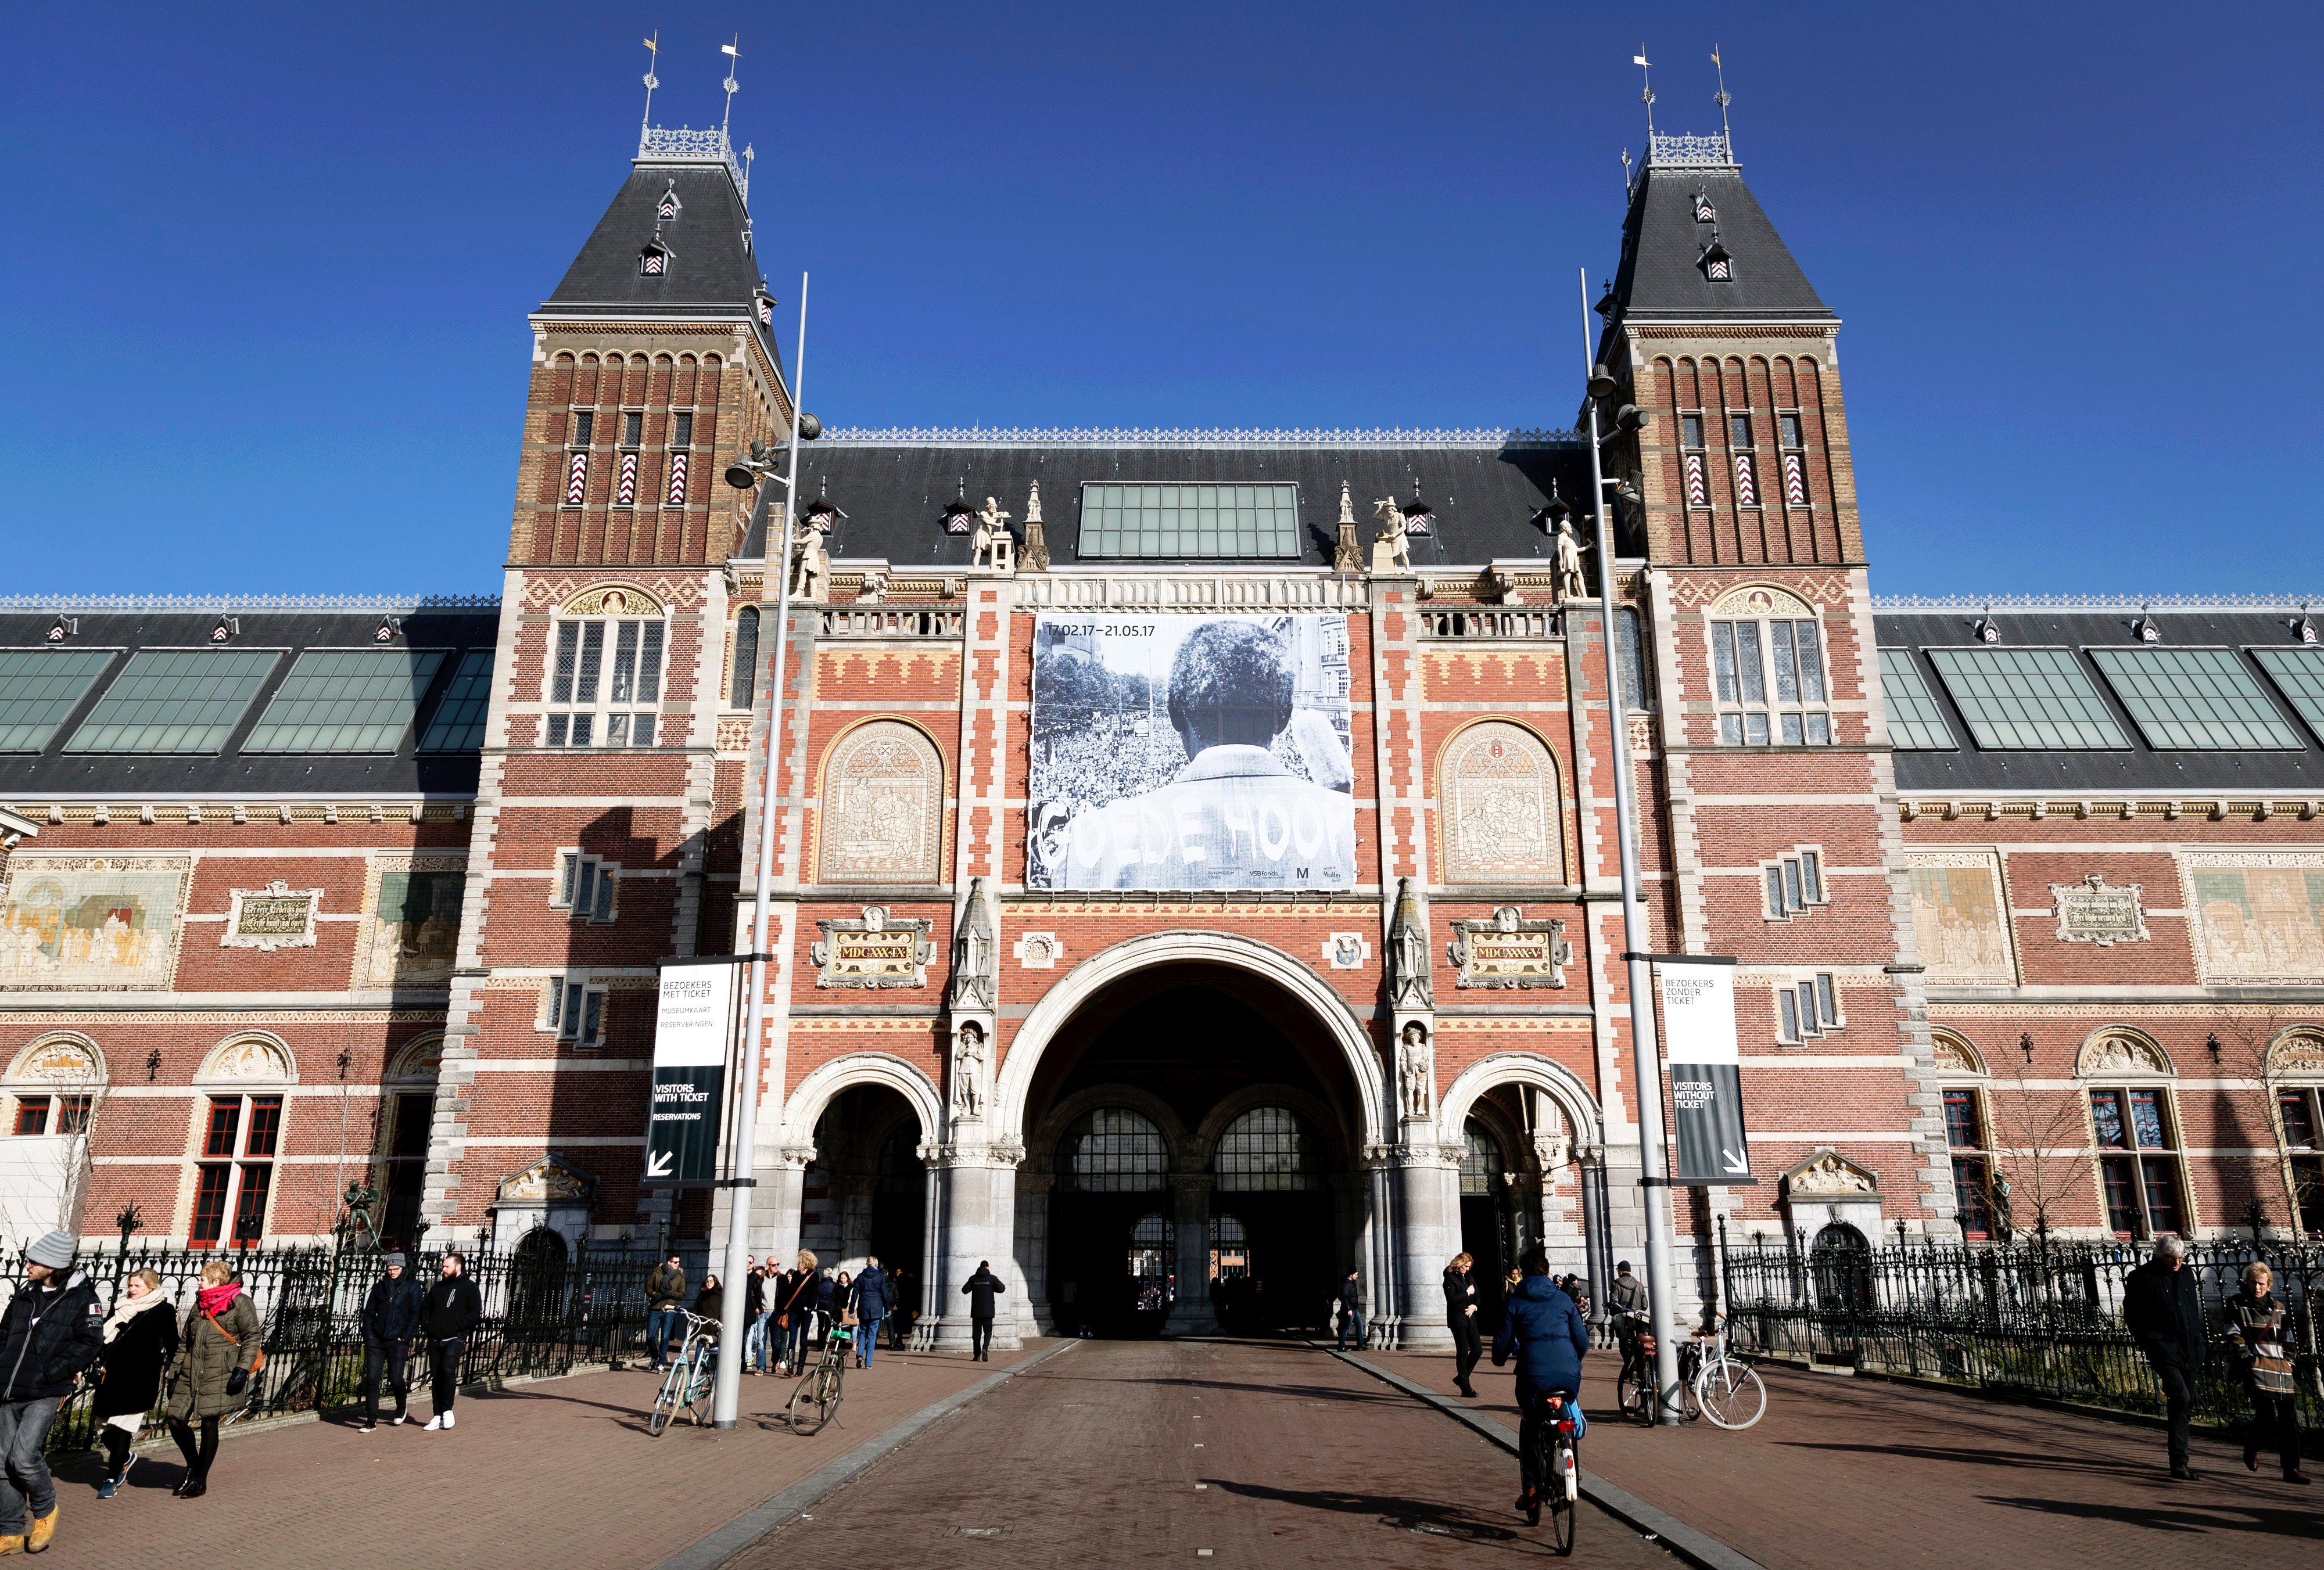 2017-02-14 13:04:02 AMSTERDAM - Exterieur van het Rijksmuseum. ANP REMKO DE WAAL